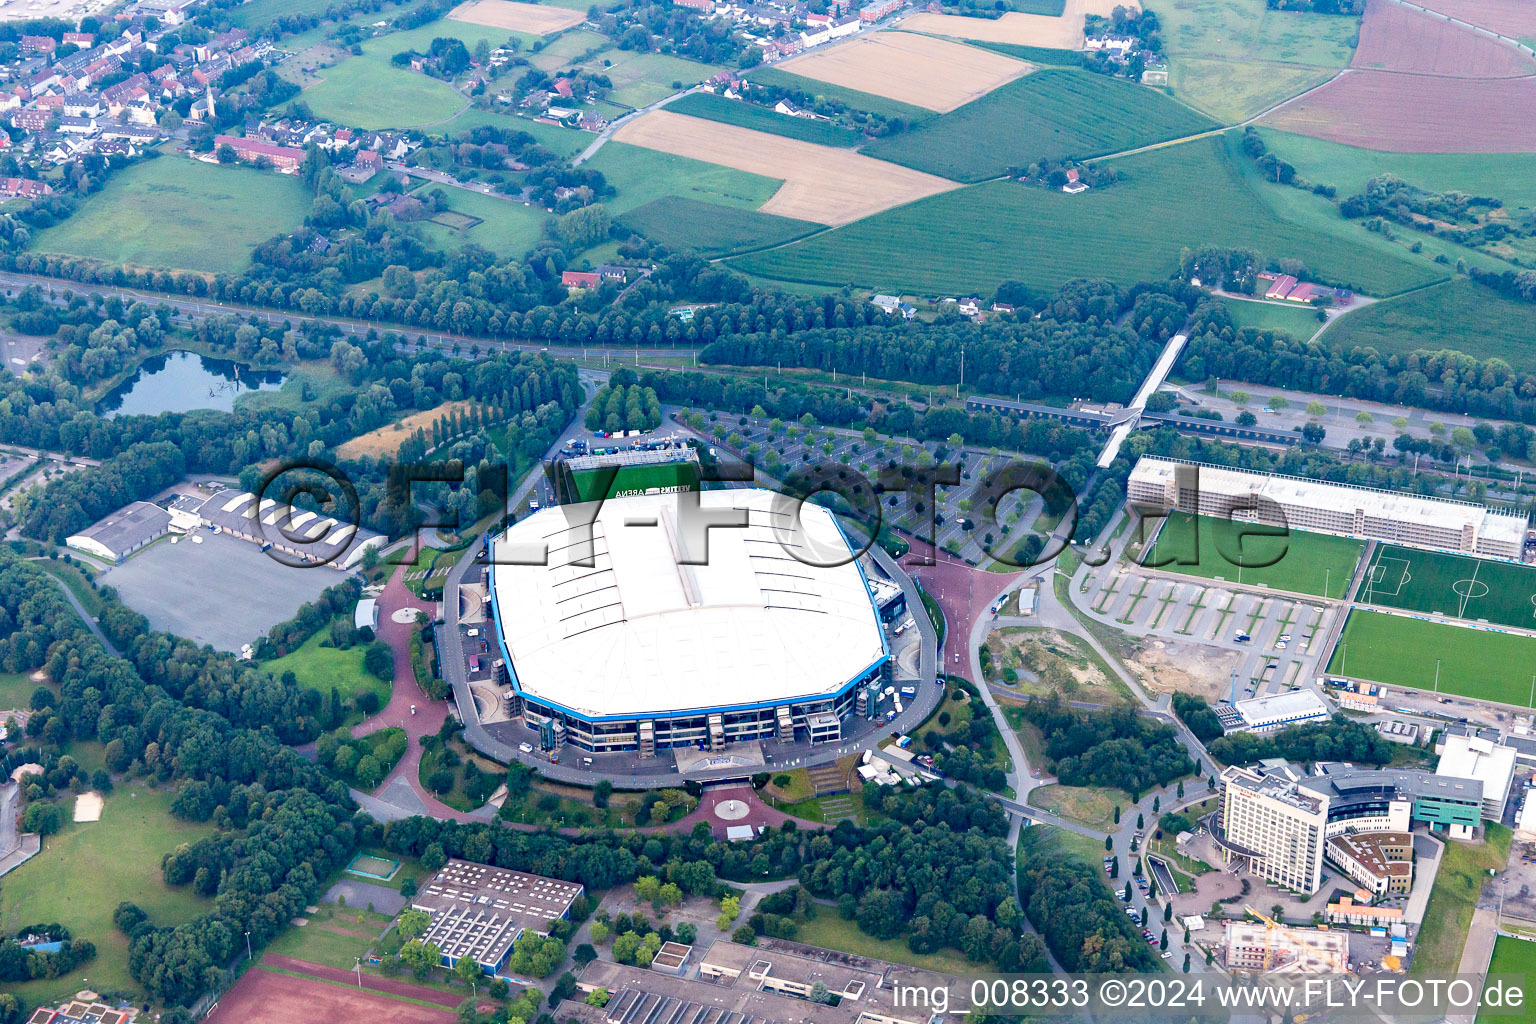 Fussballstadion Veltins-Arena auf Schalke des Vereins Schalke 04 in Gelsenkirchen. Das Dach der Arena ist offen im Bundesland Nordrhein-Westfalen, Deutschland